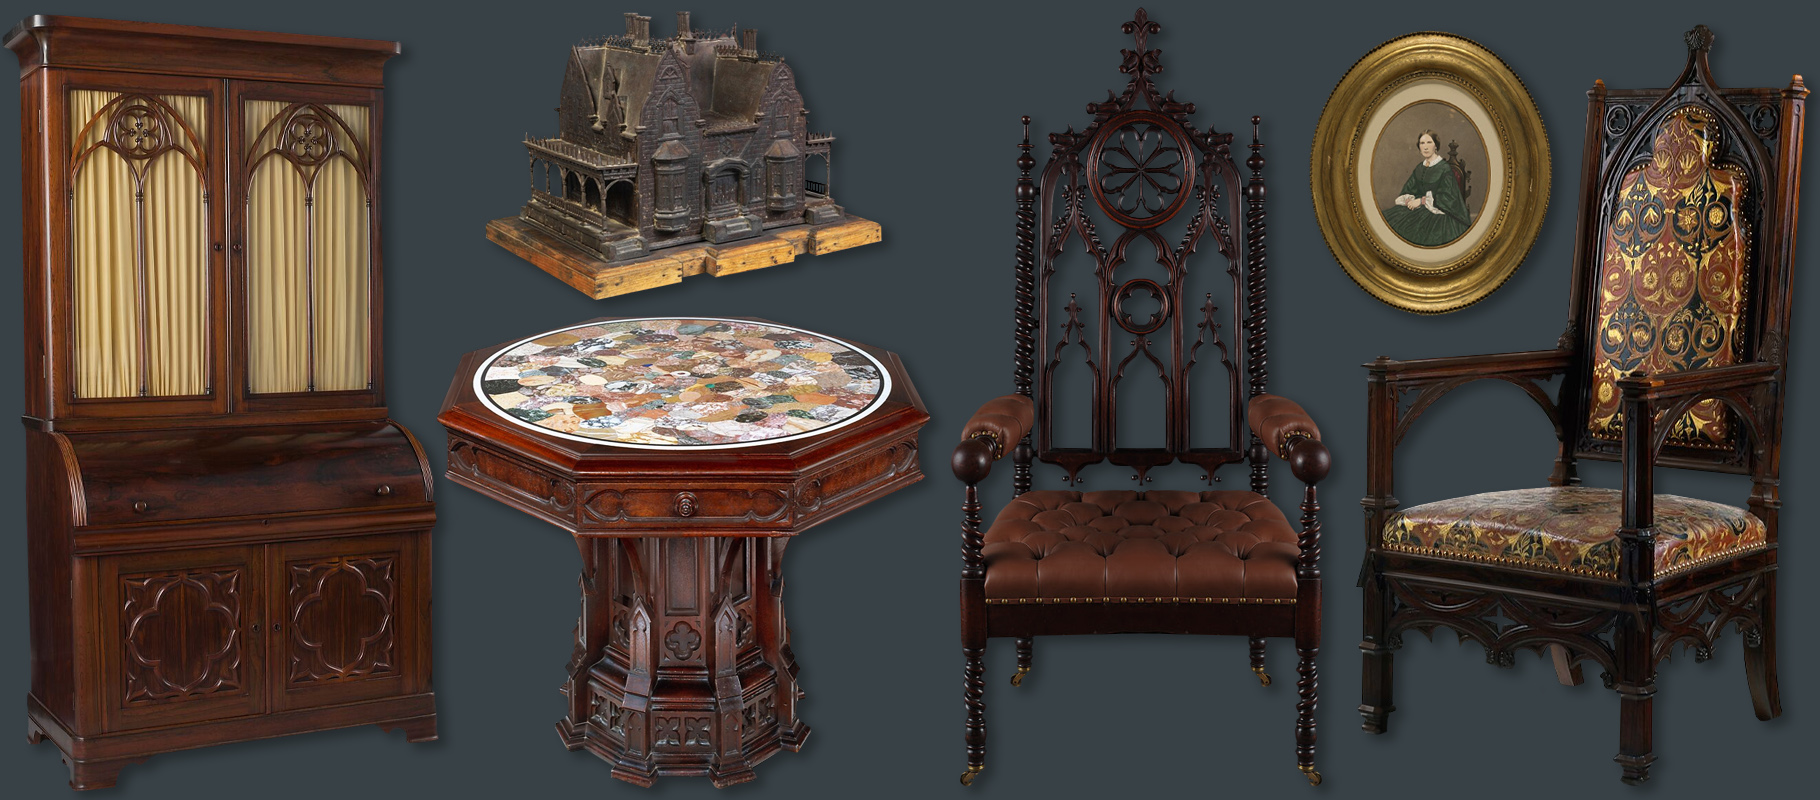 Identify antique furniture - Tudor, baroque, mid-century modern